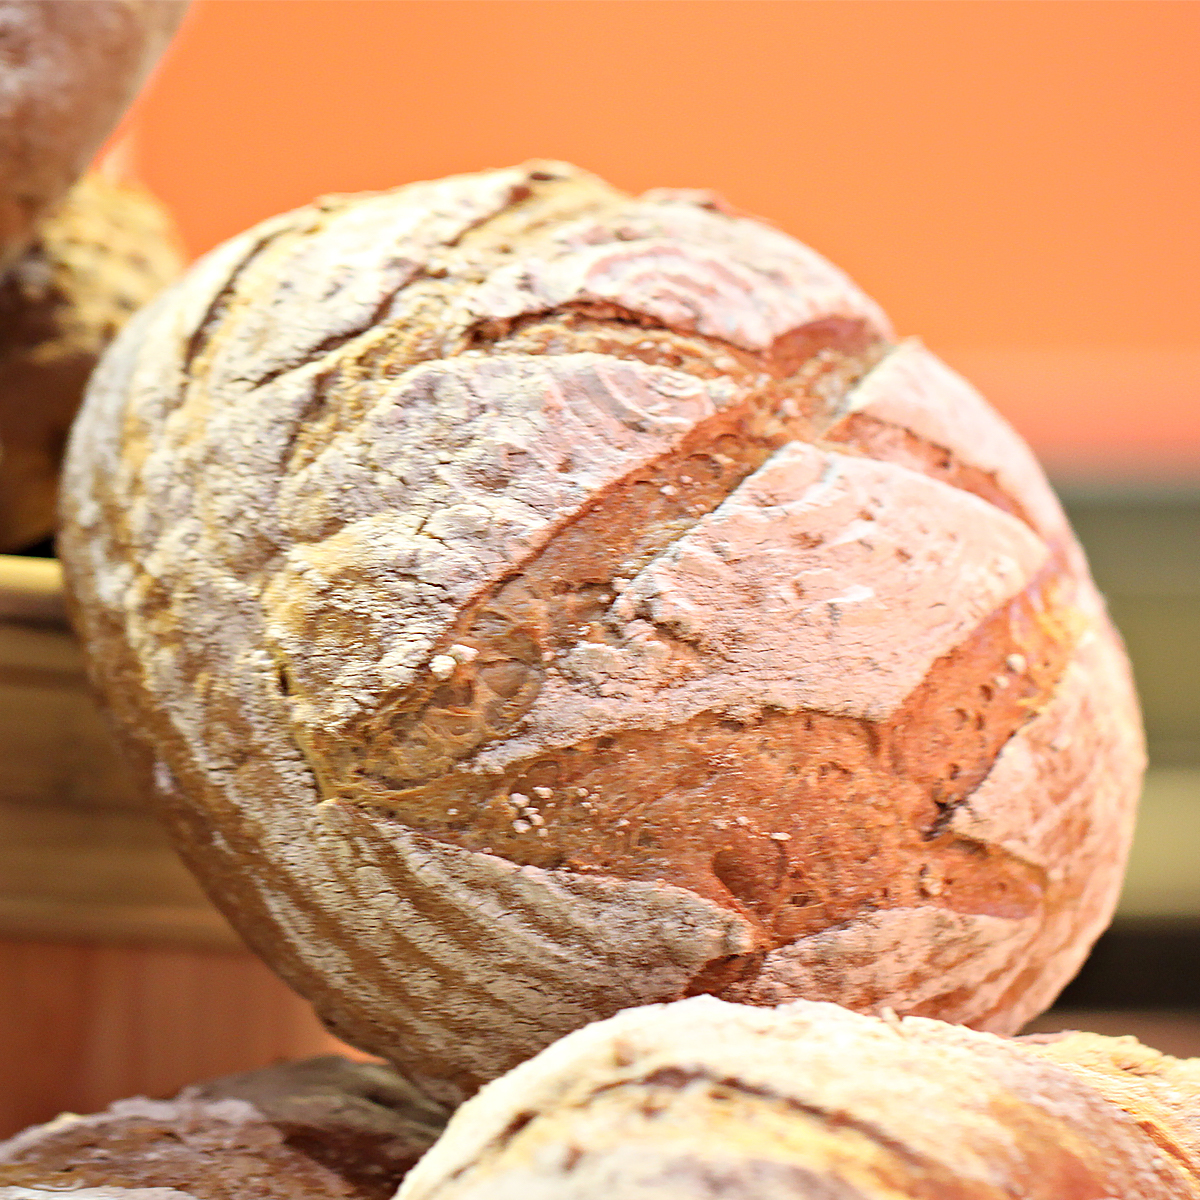 https://www.livingonadime.com/wp-content/uploads/no-knead-sourdough-bread-recipe-tr.jpg